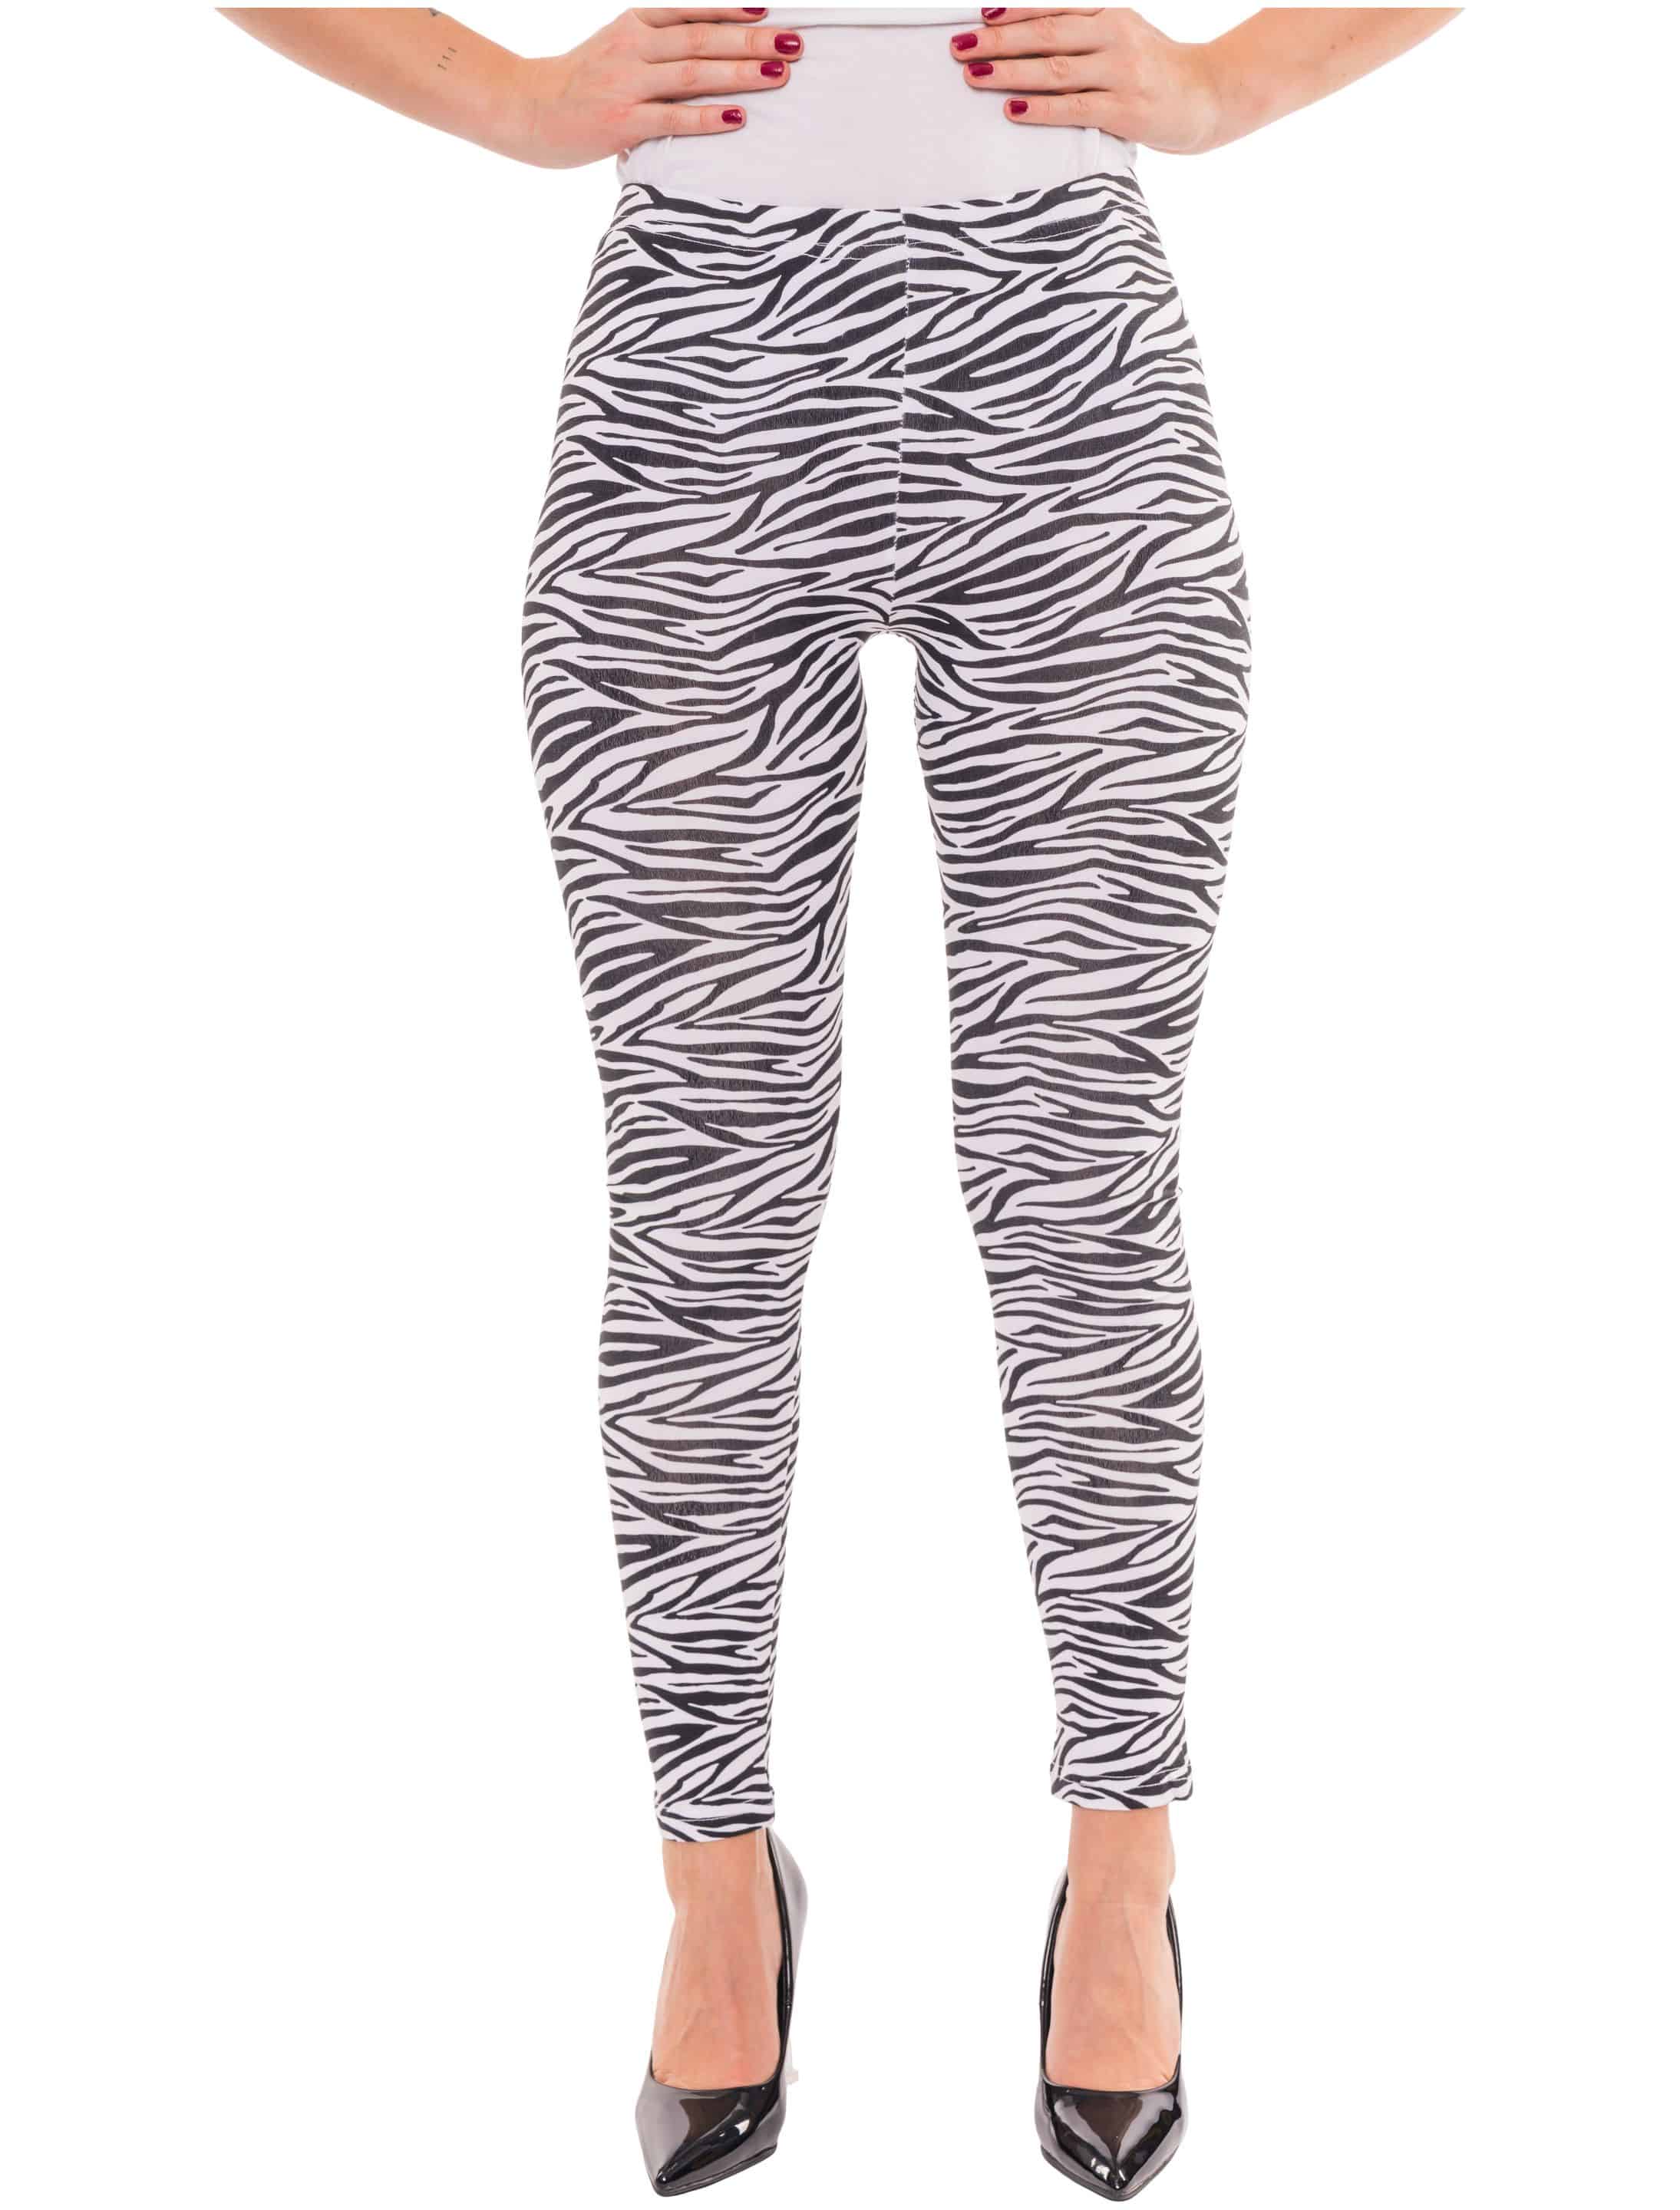 Leggings Zebra Damen schwarz/weiß 2XL